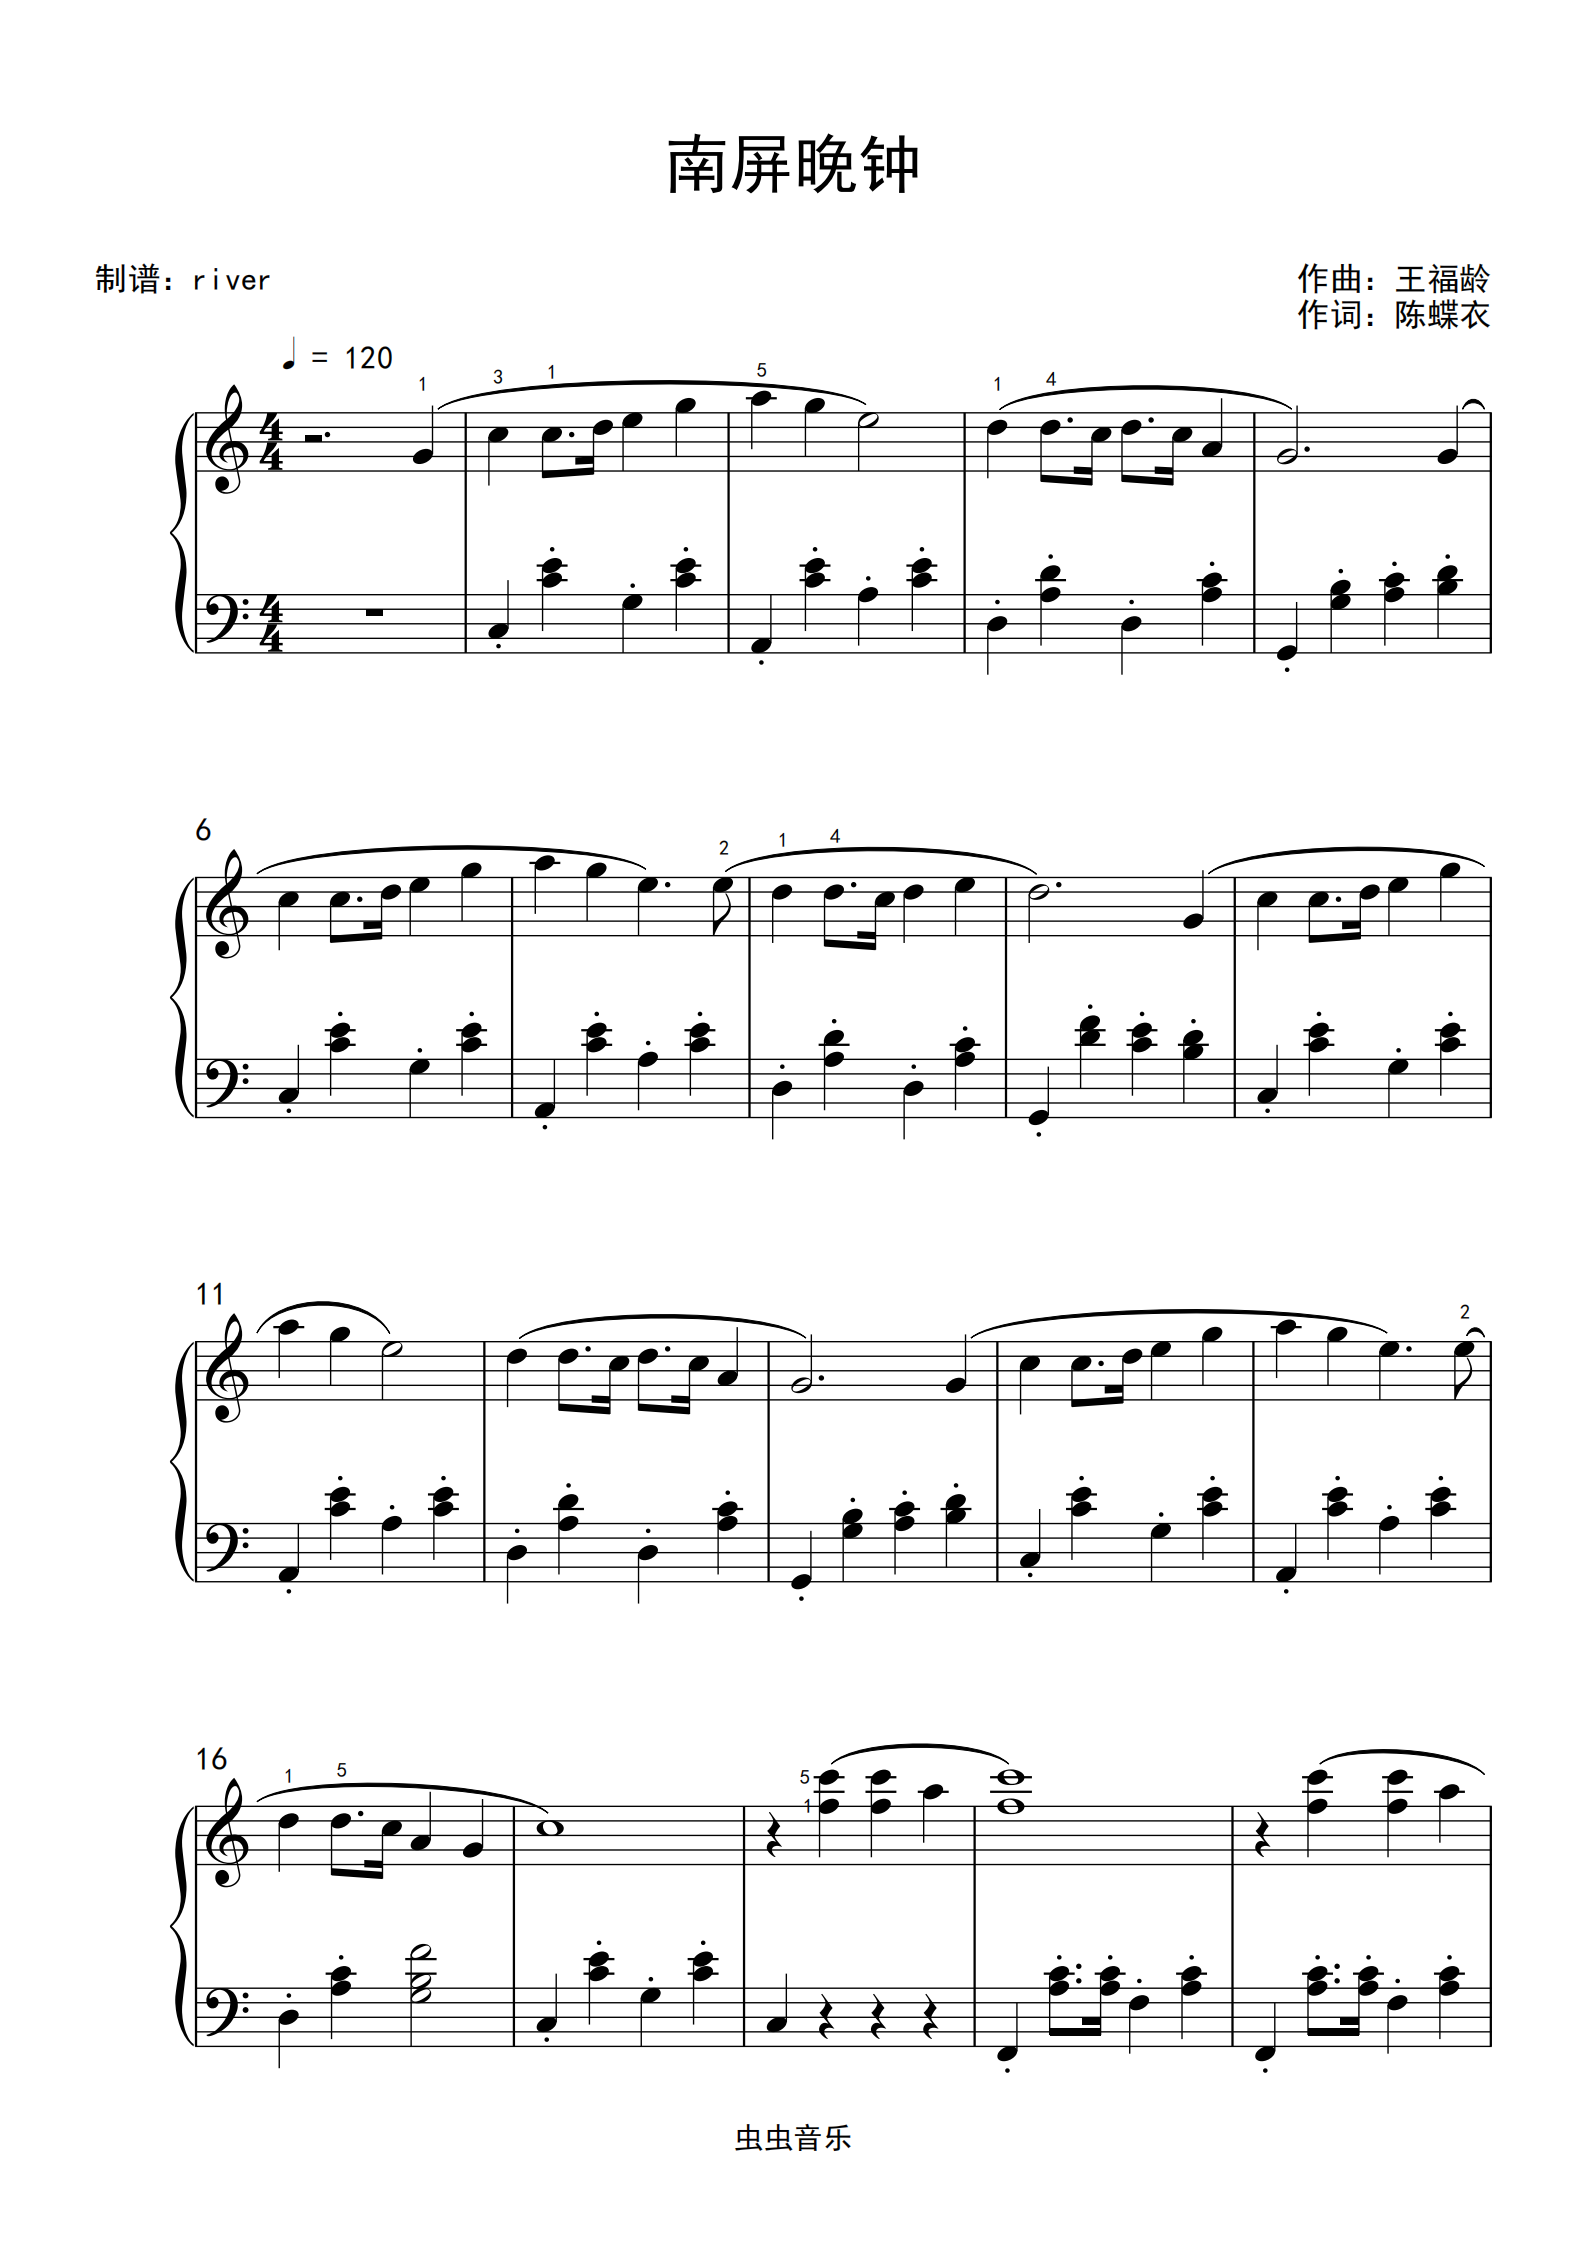 南屏晚钟 c调完美和声 指法 公式化左手钢琴谱